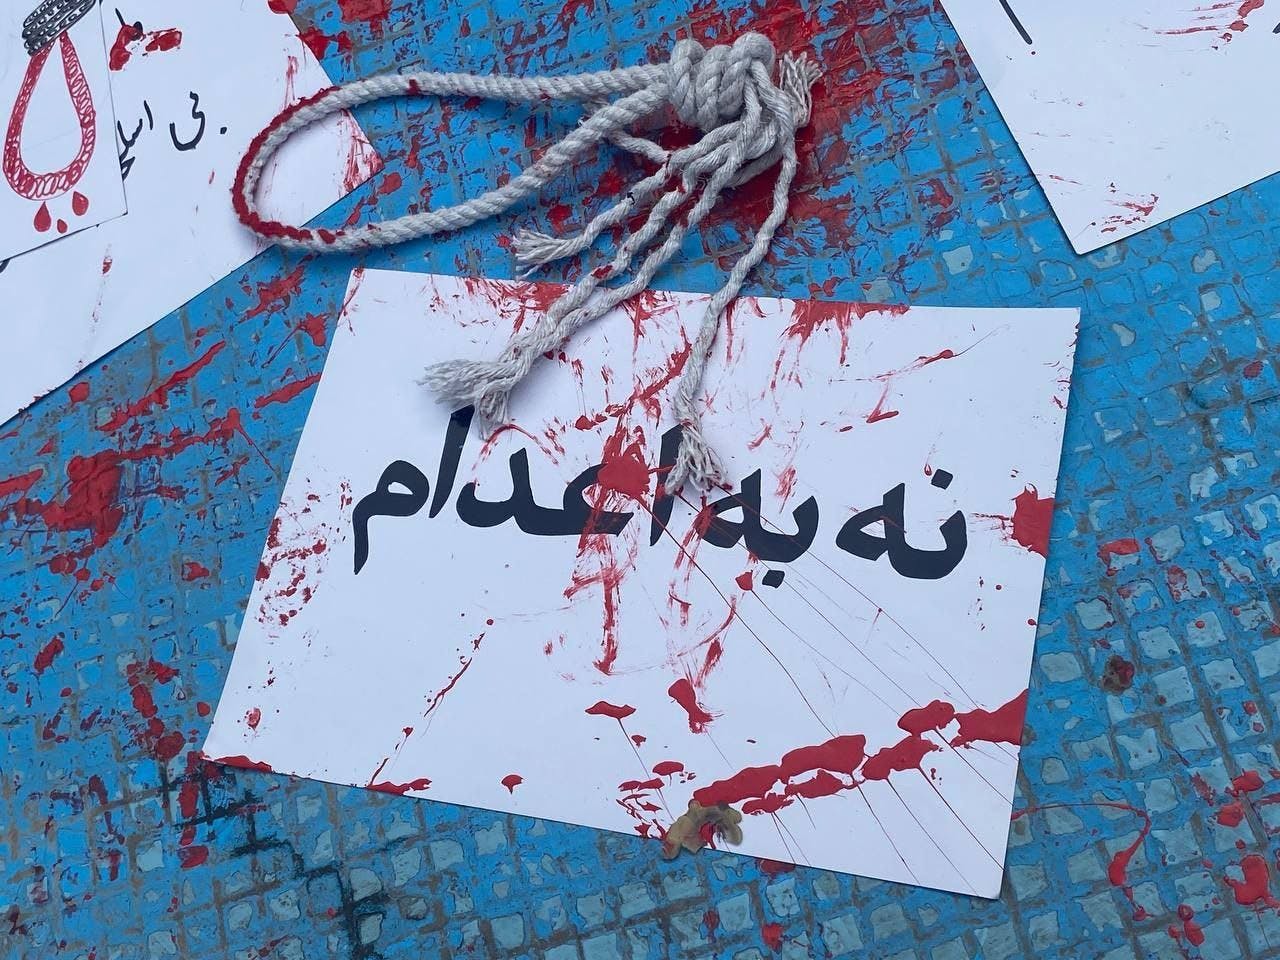 روی کاغذ سفیدی نوشته شده است نه به اعدام و روی آن رنگ قرمز پاشیده شده و طنابی پاره روی آن افتاده